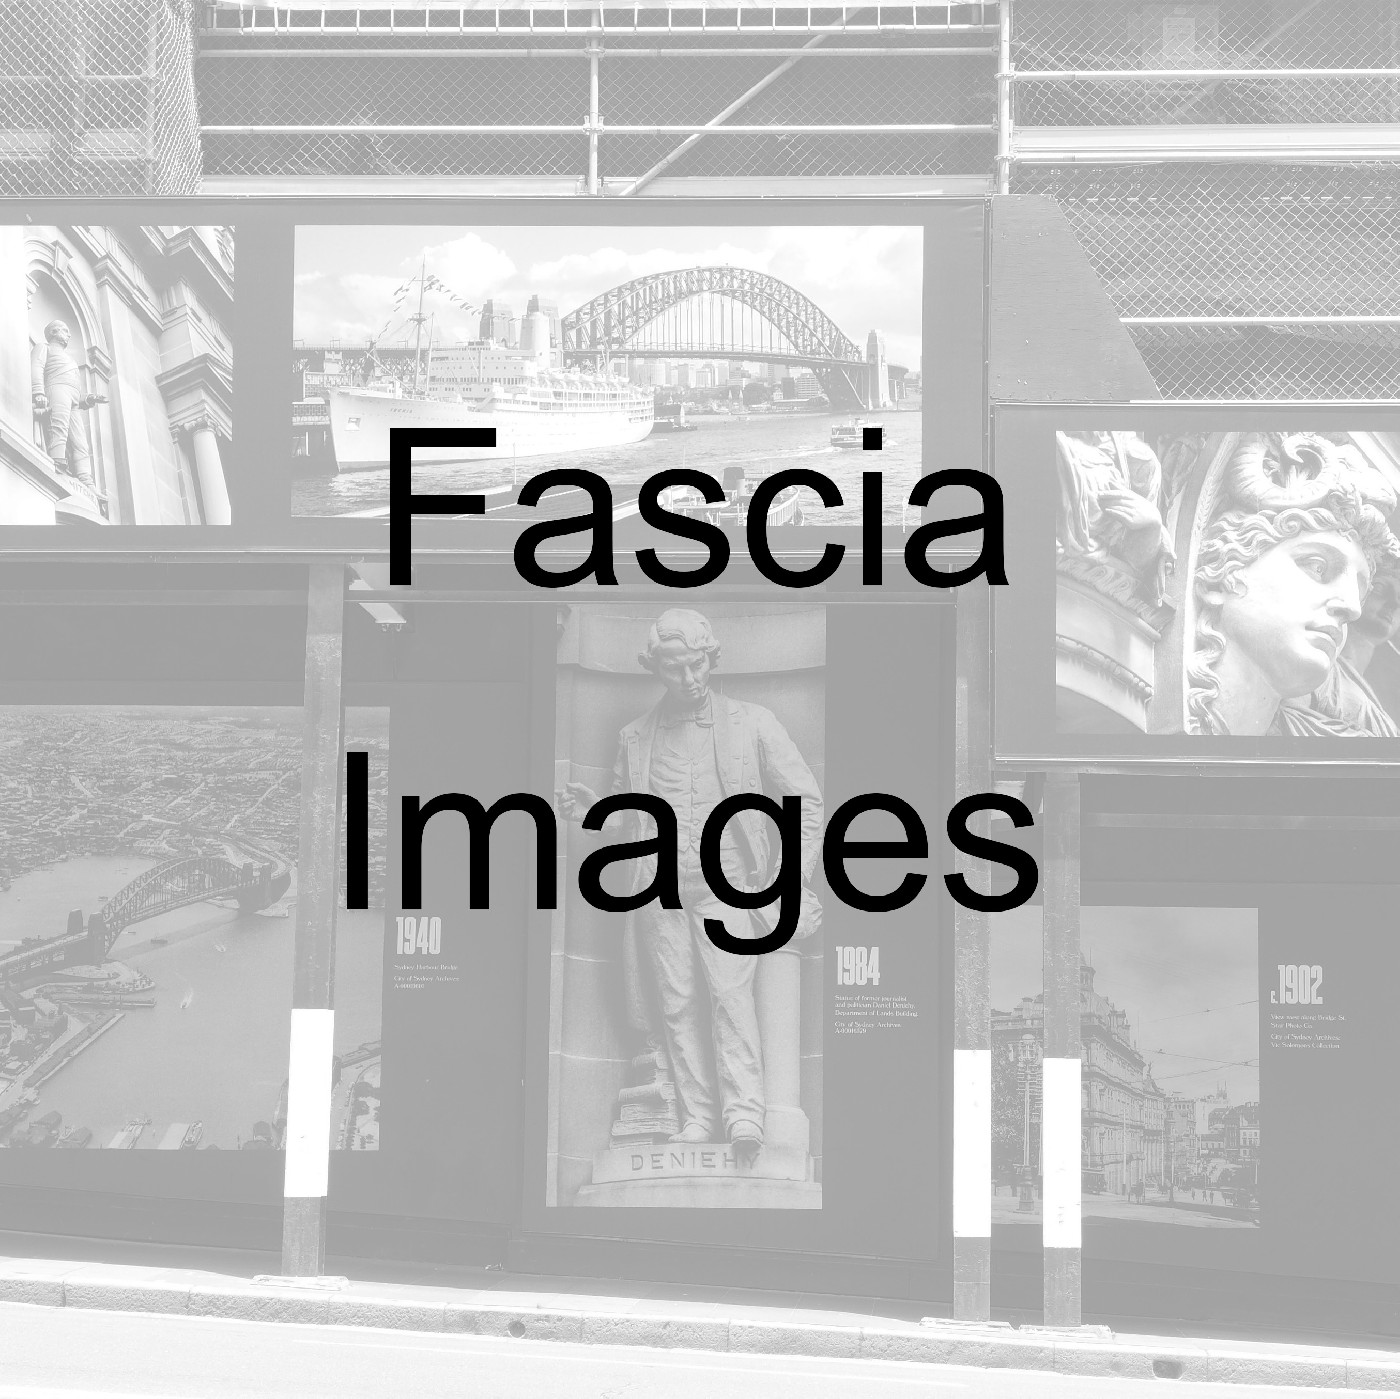 Pyrmont - Fascia Images